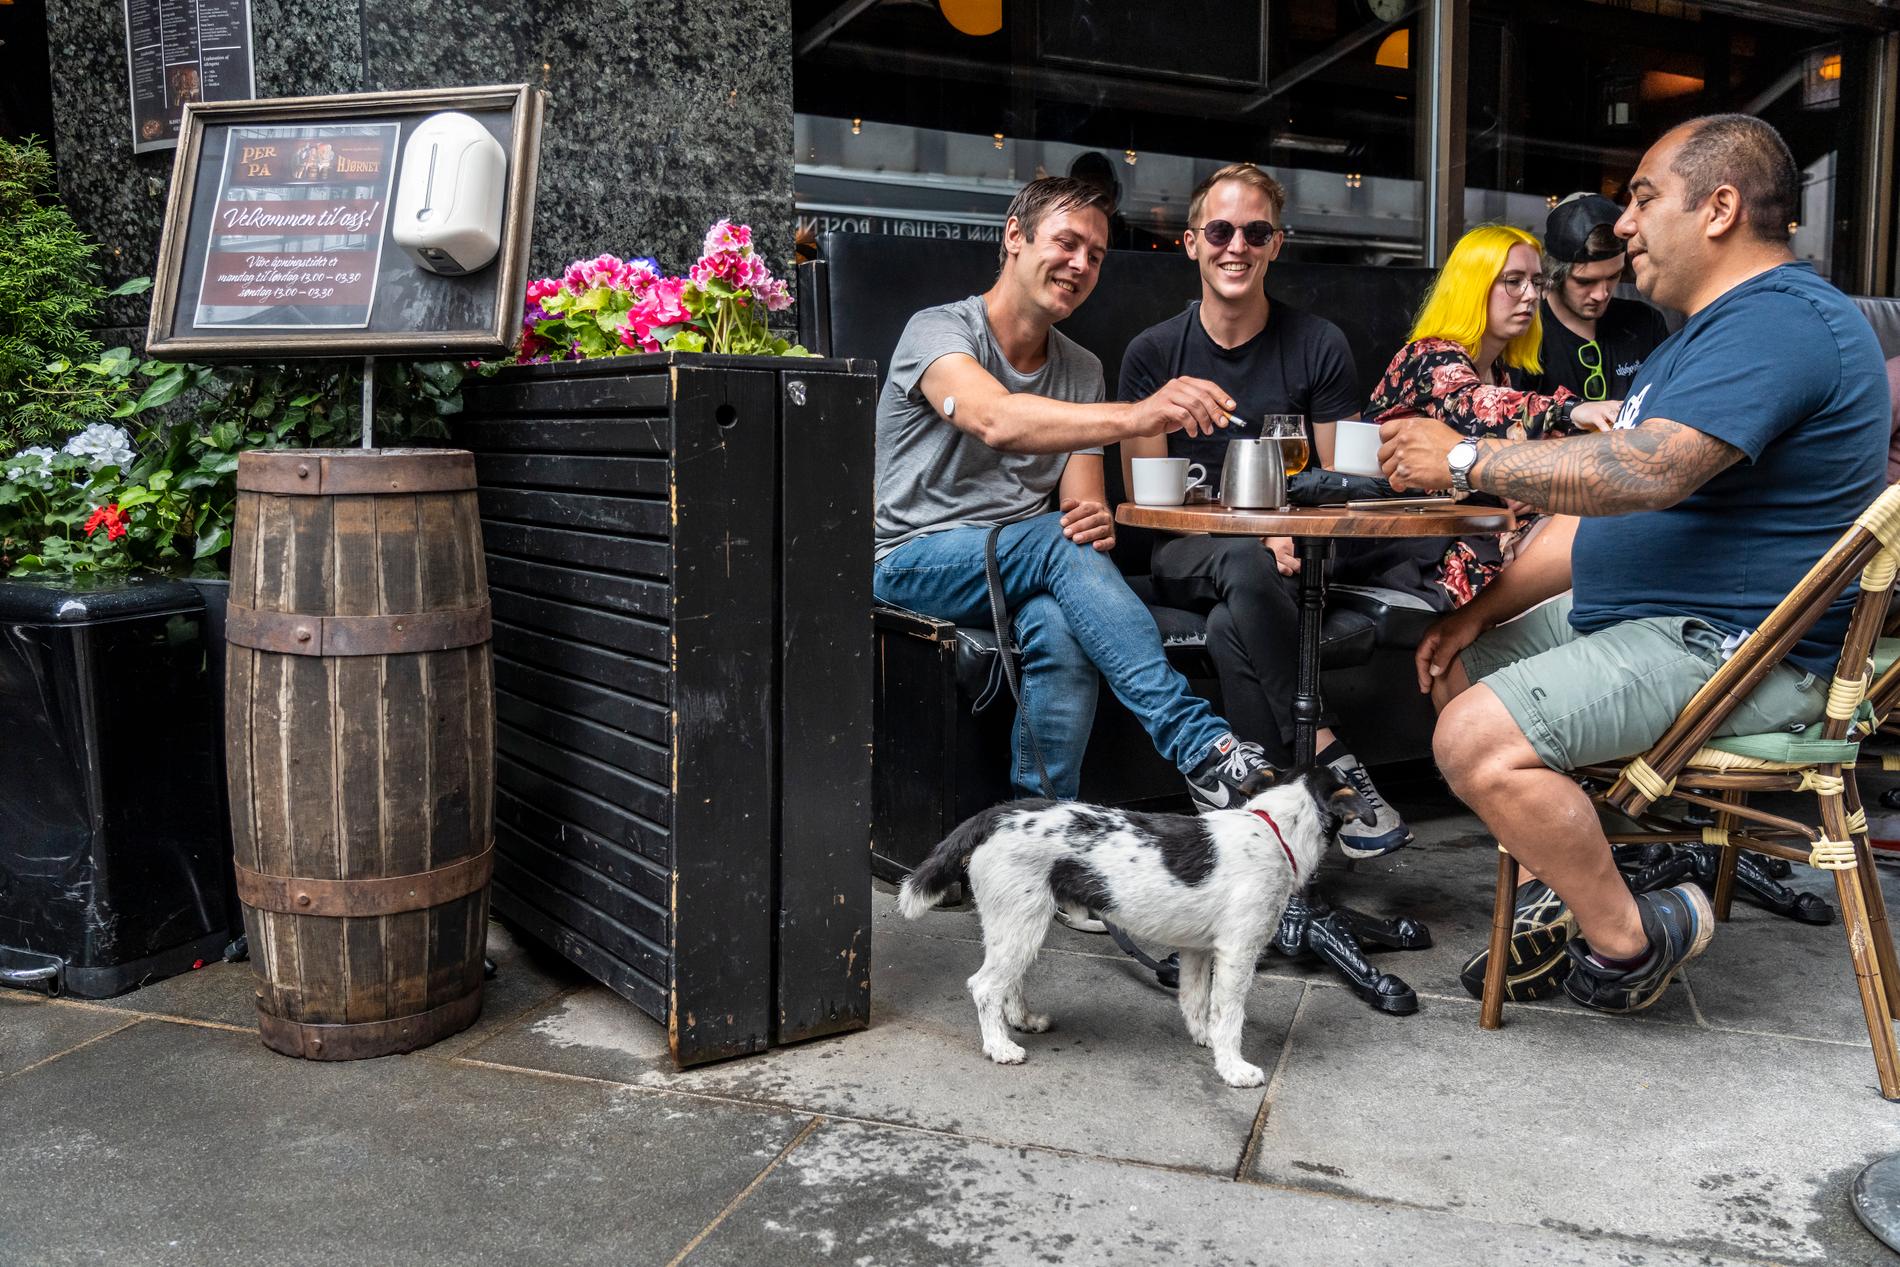 Paret Öyvind Jörgensen, 40, och Mats Hagen, 33, tillsammans med vännen Per Tennfjord-Jensen, 46, njuter av öl och kaffe hos Per på hjørnet. 